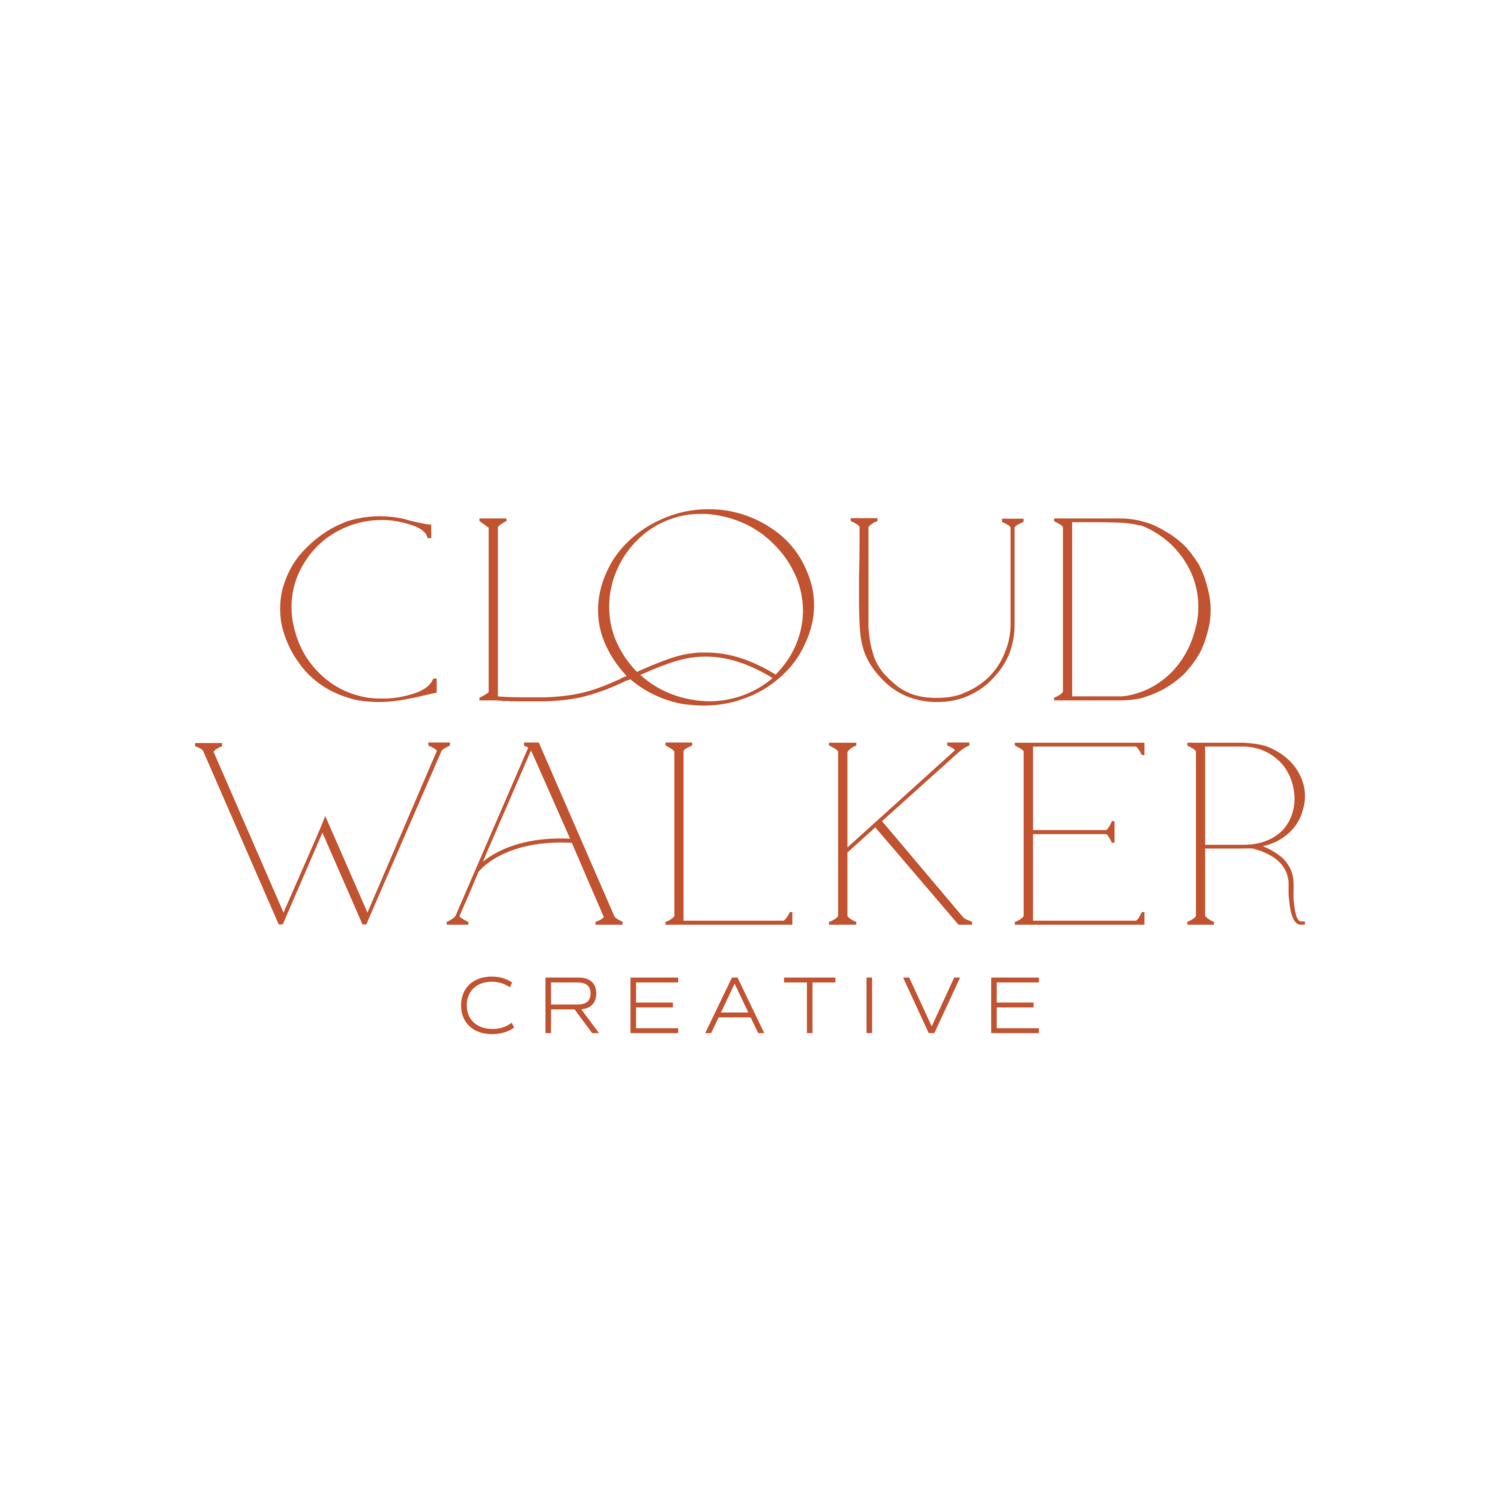 Cloudwalker Creative